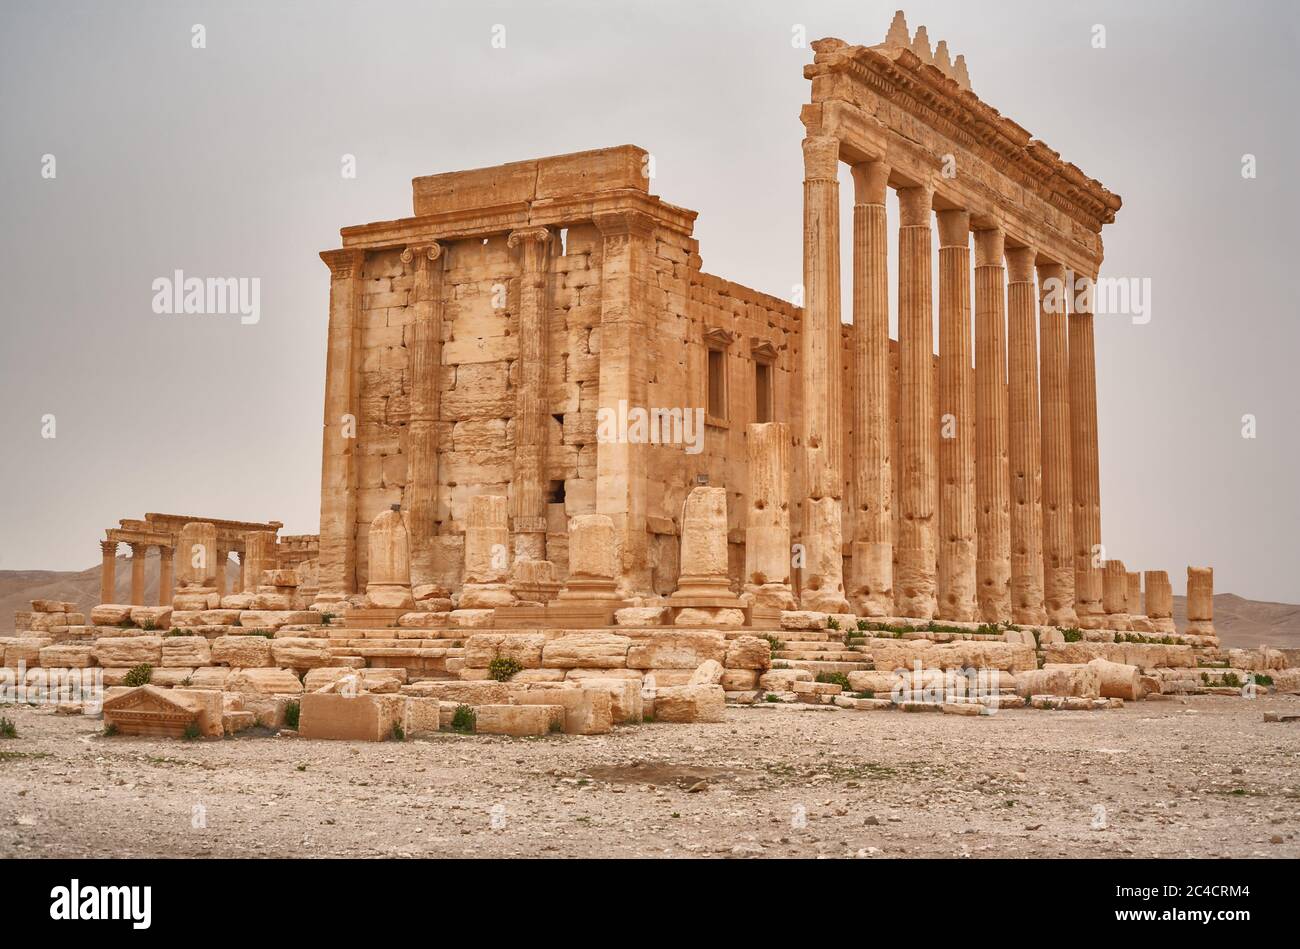 Temple of Bel, Baal-Shamin, 130, Palmyra, Tadmur, Syria Stock Photo